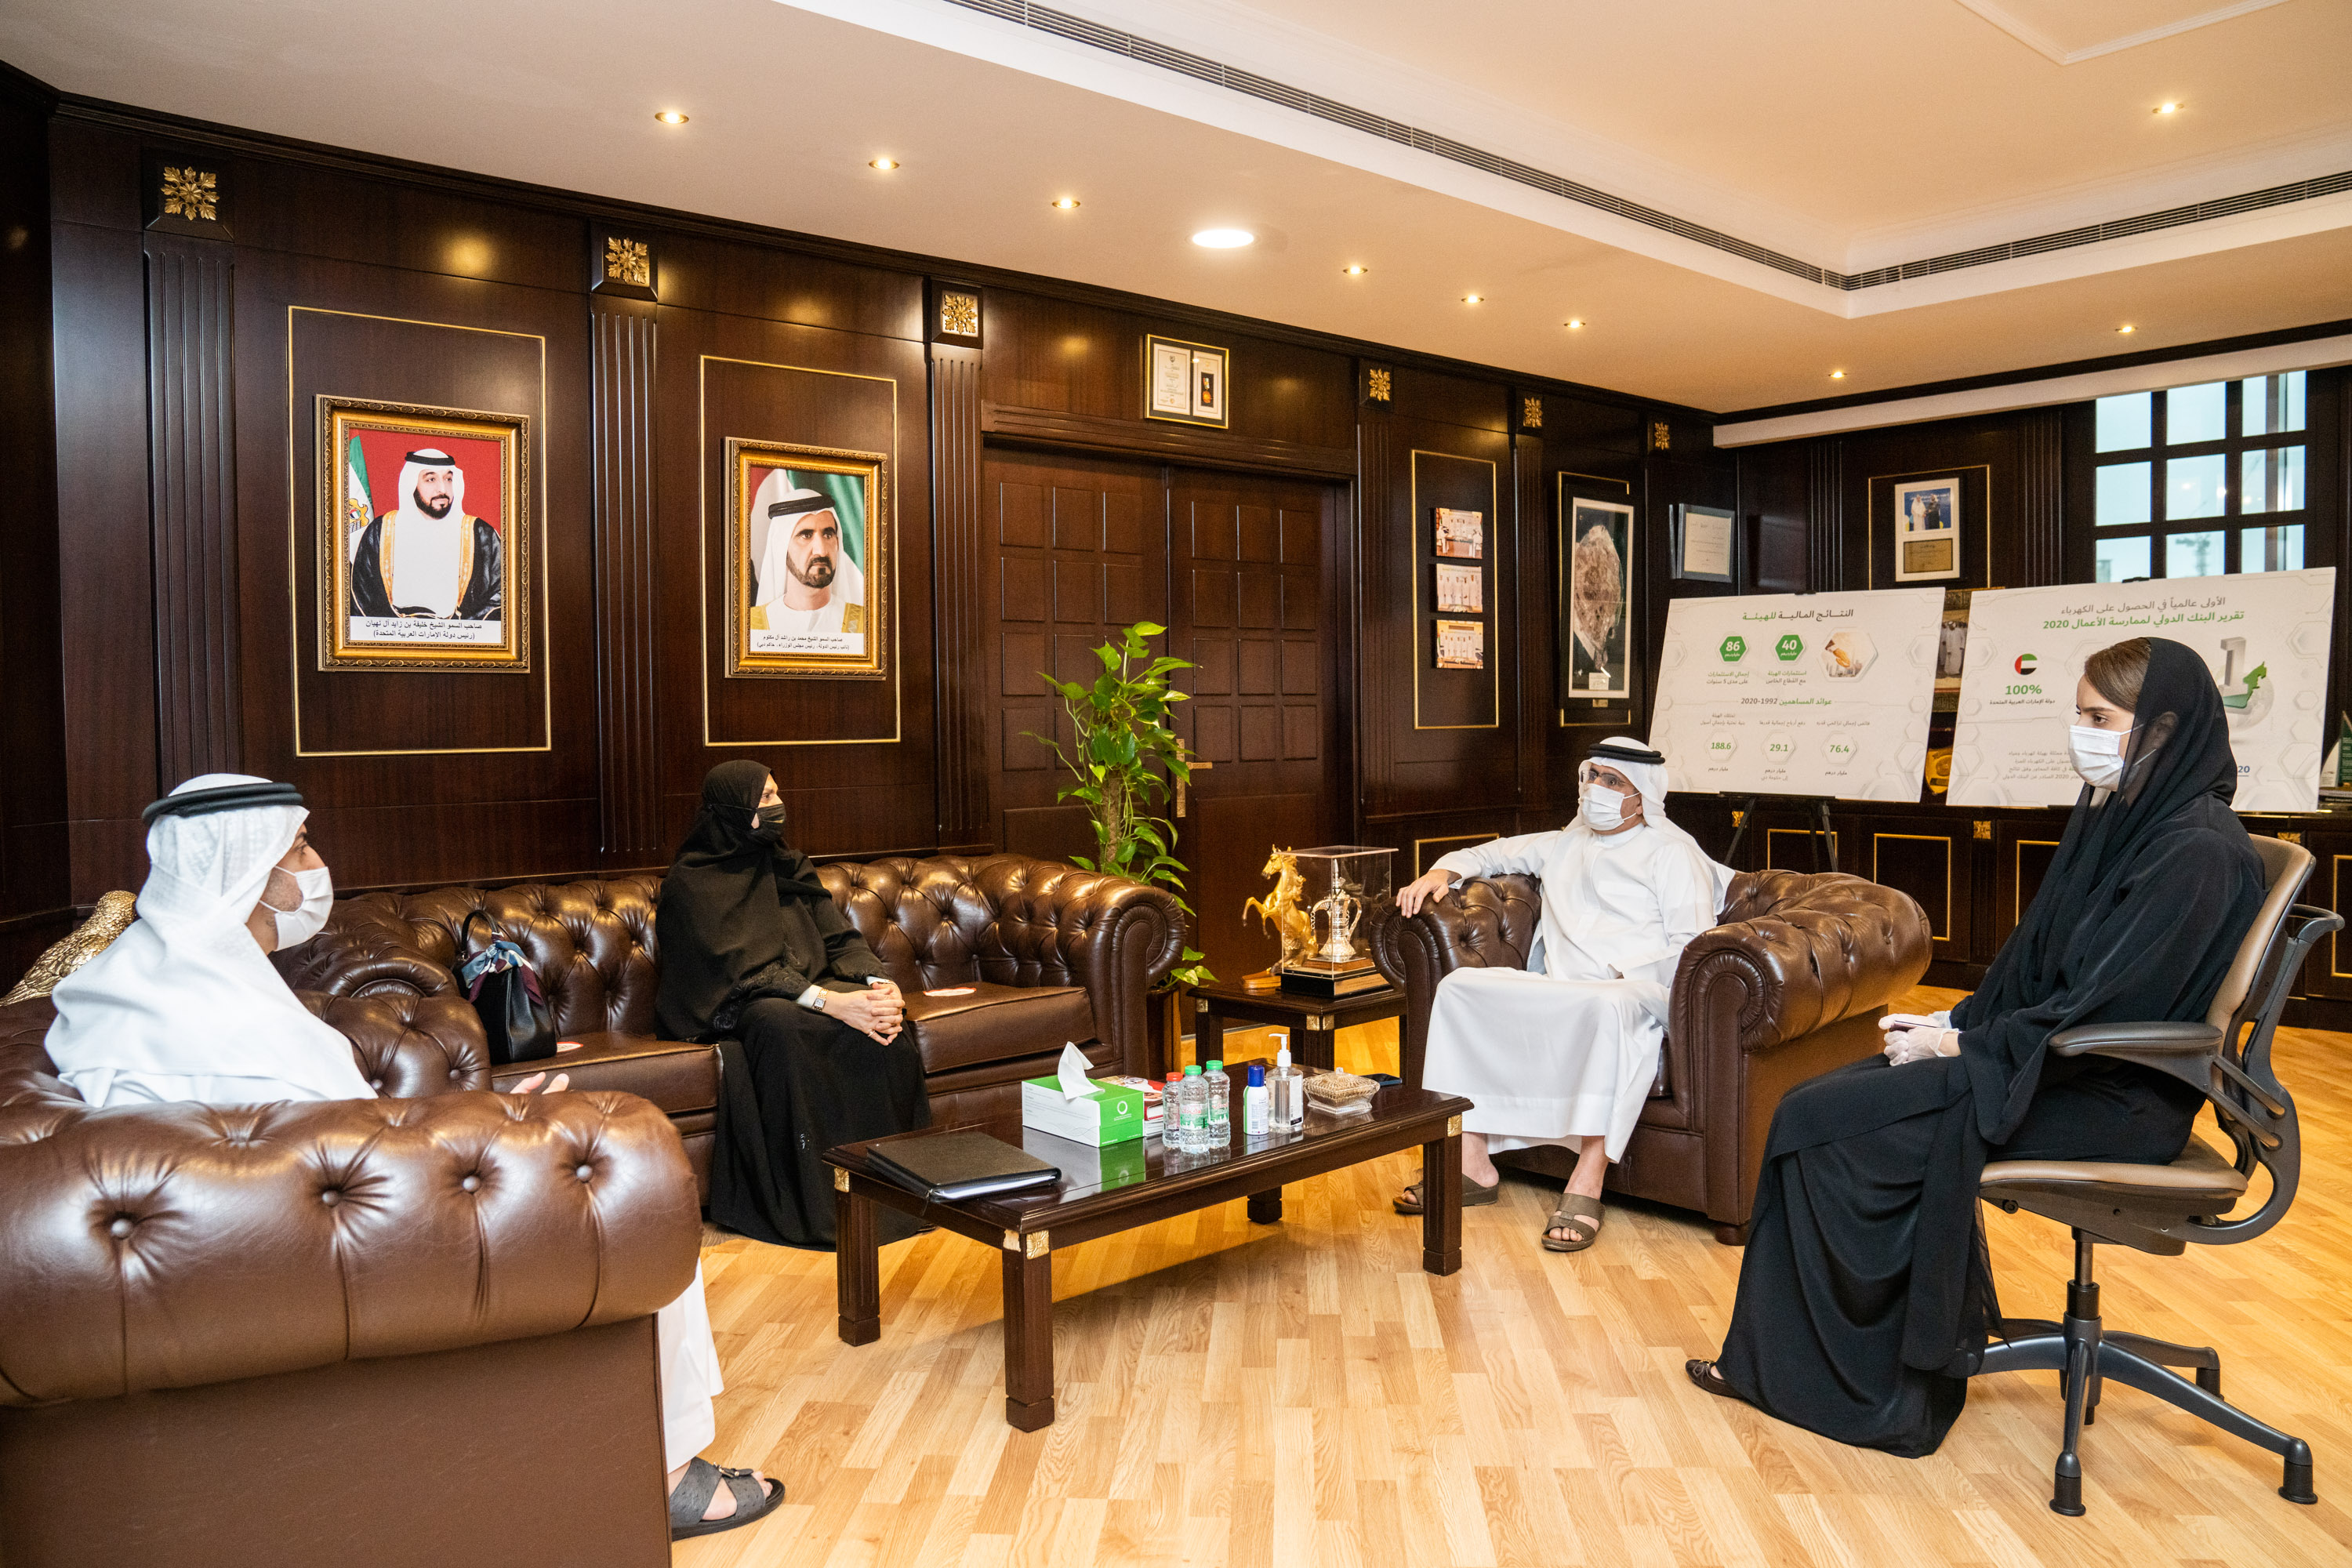 هيئة كهرباء ومياه دبي تتبرع بـ 30 مليون درهم لصالح مستشفى حمدان بن راشد الخيري لرعاية مرضى السرطان